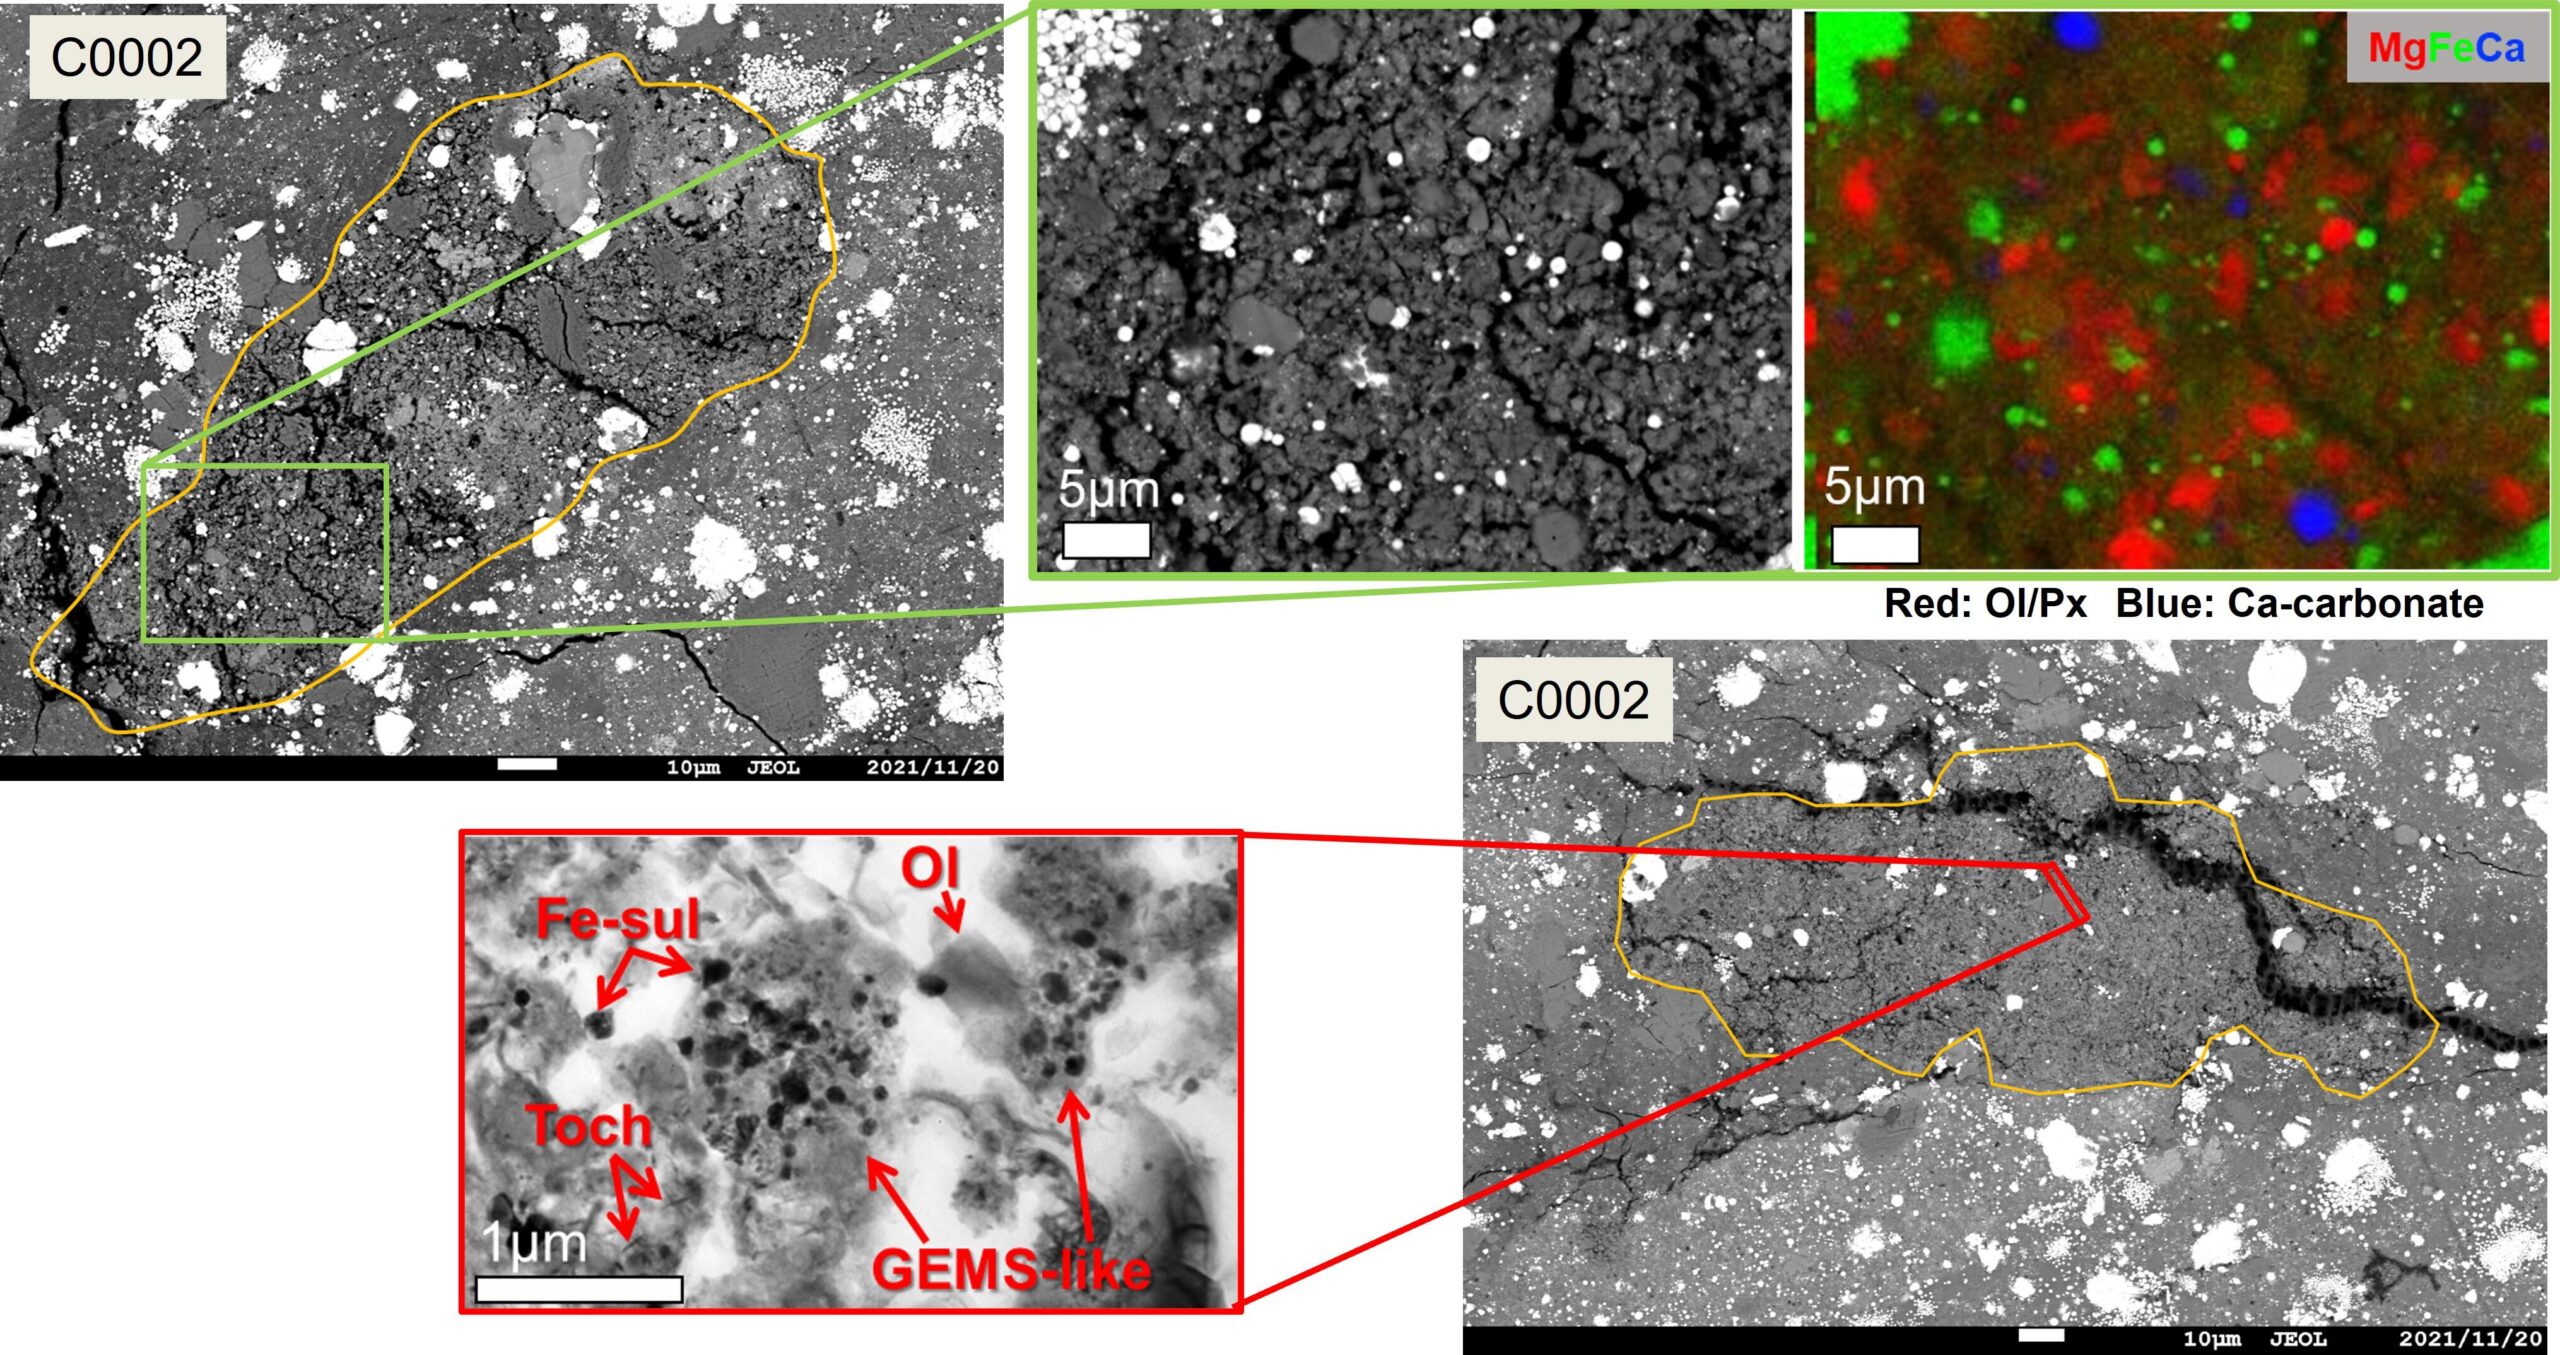 在 C0002 样本中发现的一块岩石碎片，保留了天体形成时的原始特征（电子显微照片）。 (A) 细粒多孔岩石碎片的整体图像，(B) 部分岩石碎片的放大图，(C) 与 B 相同区域的元素分布。 红色颗粒表示橄榄石或辉石，表明这些矿物质丰富。 (D) 细粒和多孔岩石碎片的整体视图，(E) D 的放大部分。 主要成分是由小于 1 微米的无定形硅酸盐和硫化铁形成的细颗粒（在照片中显示为 GEMS 样）和橄榄石 (Ol)